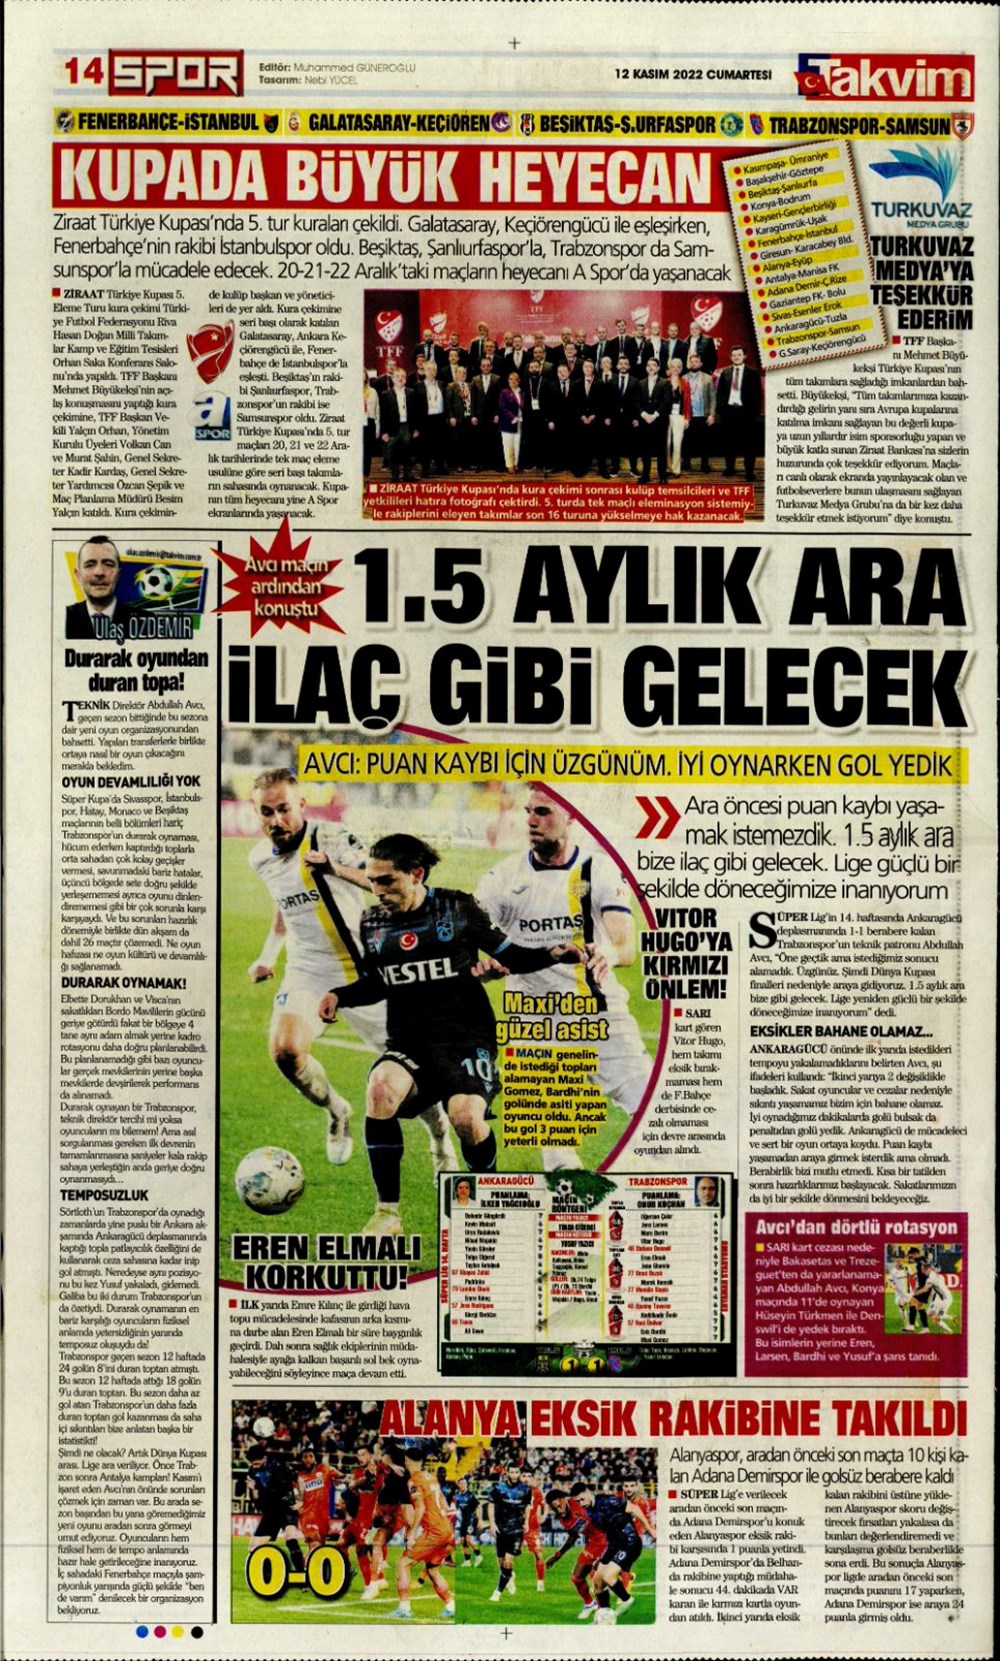 Beşiktaş'ın Konuğu İstanbulspor / Karma Alan 